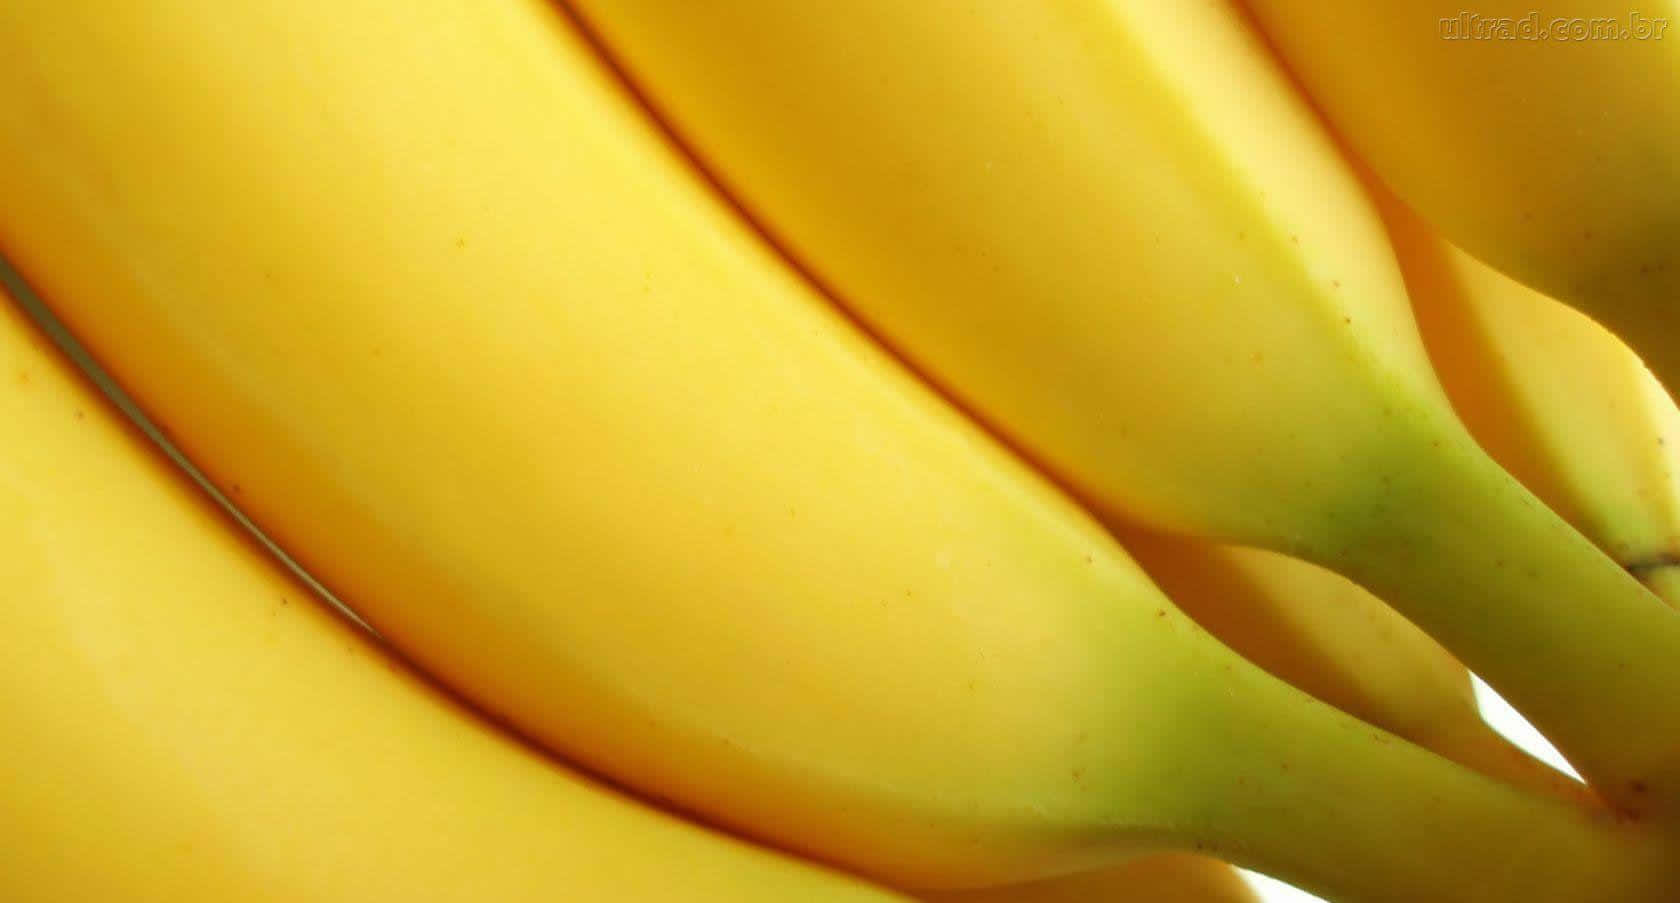 Unmontón De Plátanos Listos Para Comer.